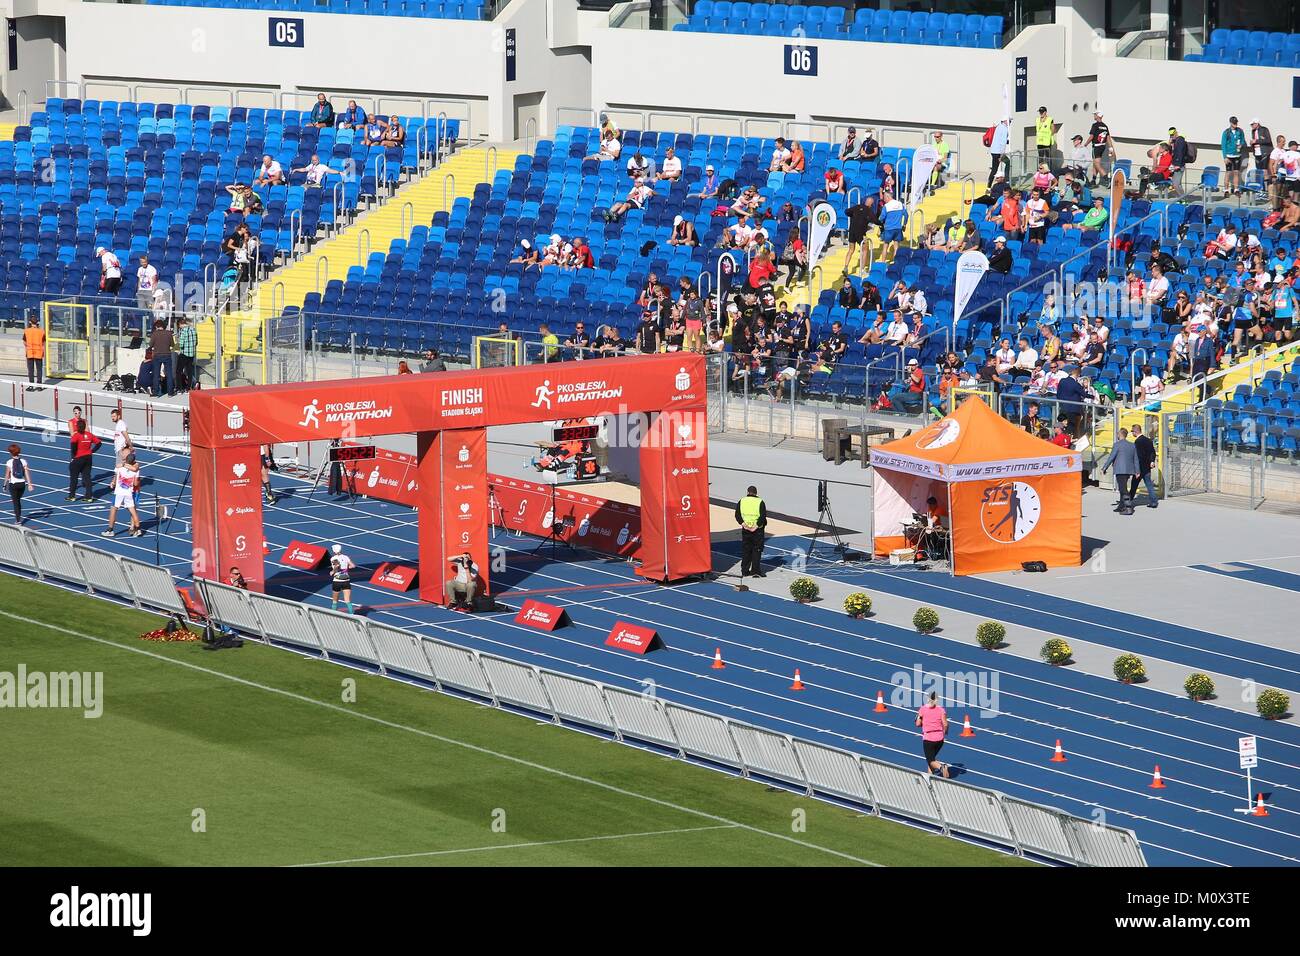 KATOWICE, POLAND - OCTOBER 1, 2017: Runners finish the PKO Silesia Marathon at Silesian Stadium in Katowice, Poland. The marathon had 2,500 participan Stock Photo